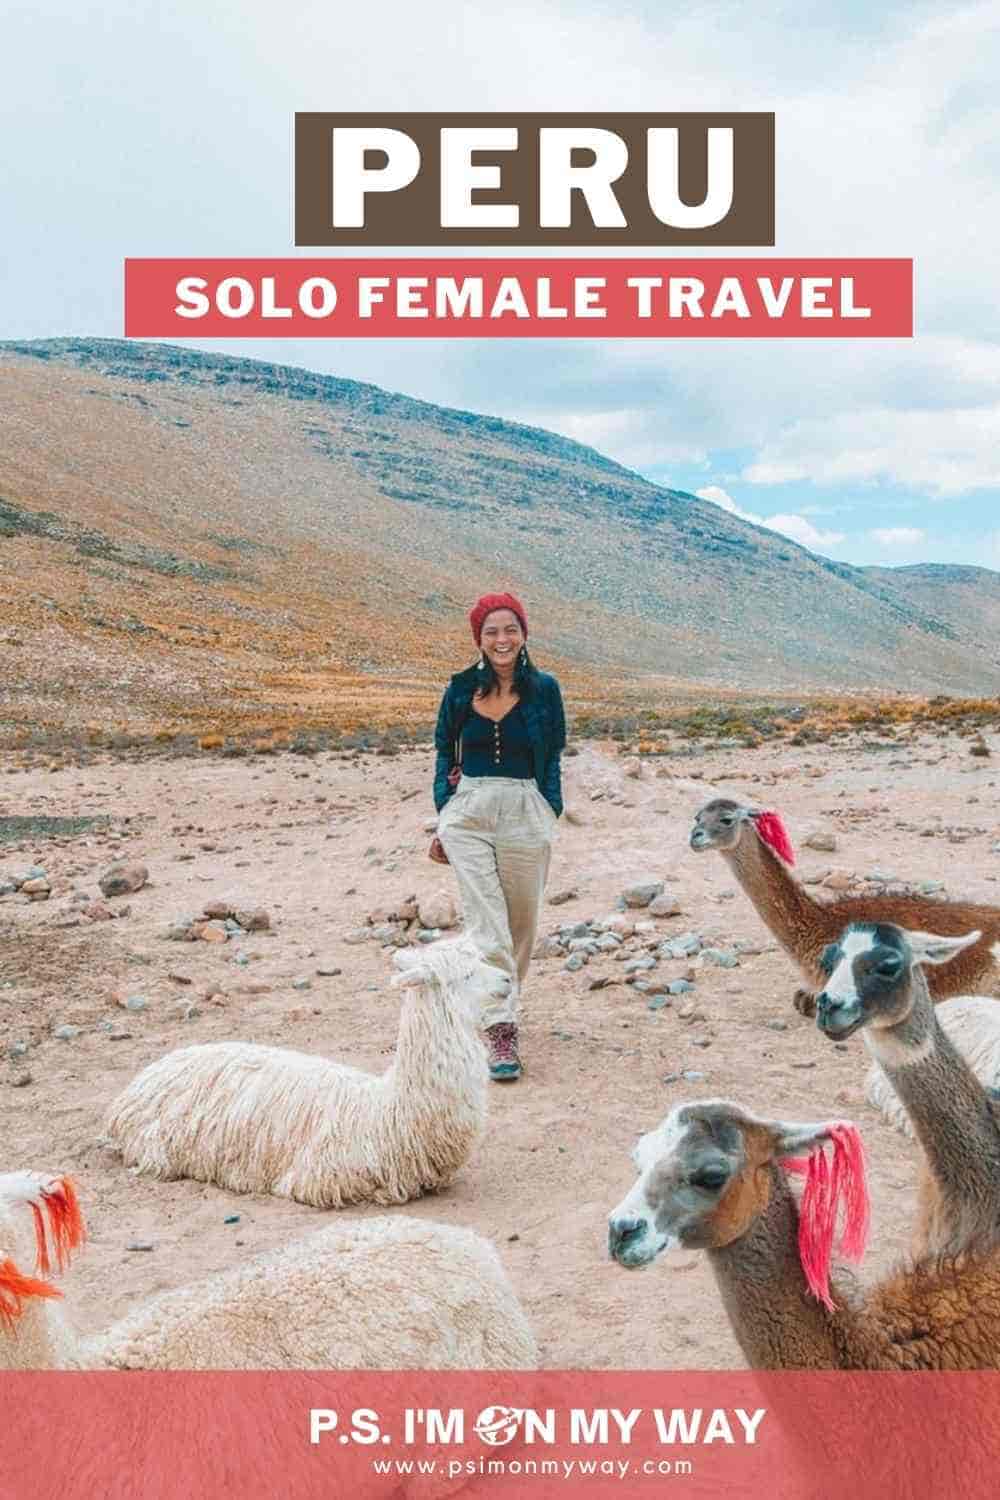 Solo female travel in Peru